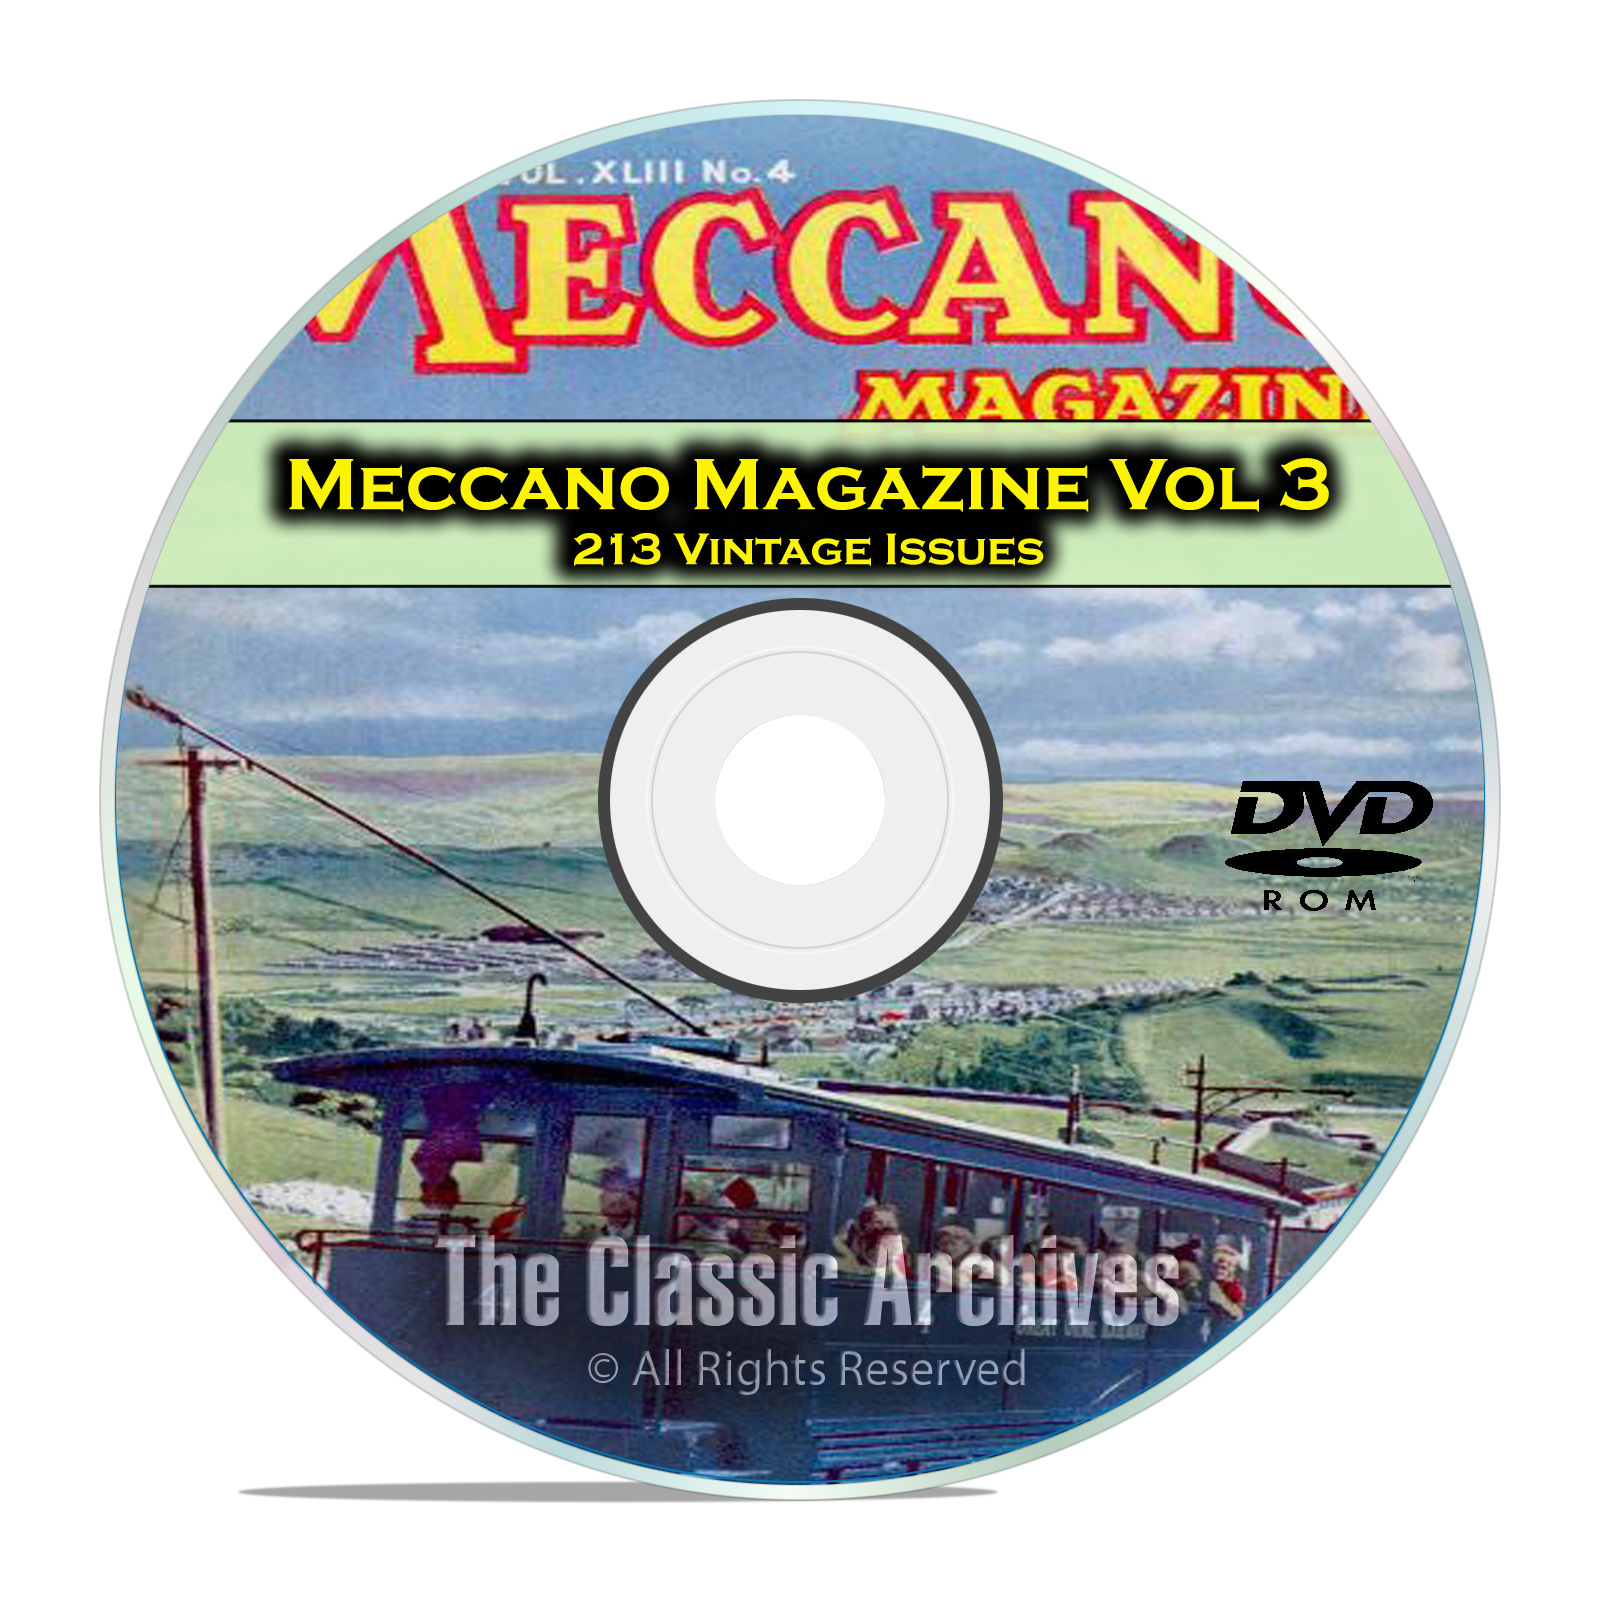 Meccano Magazine Volume 3, 213 Vintage Issues, Boy Hobby Magazine DVD